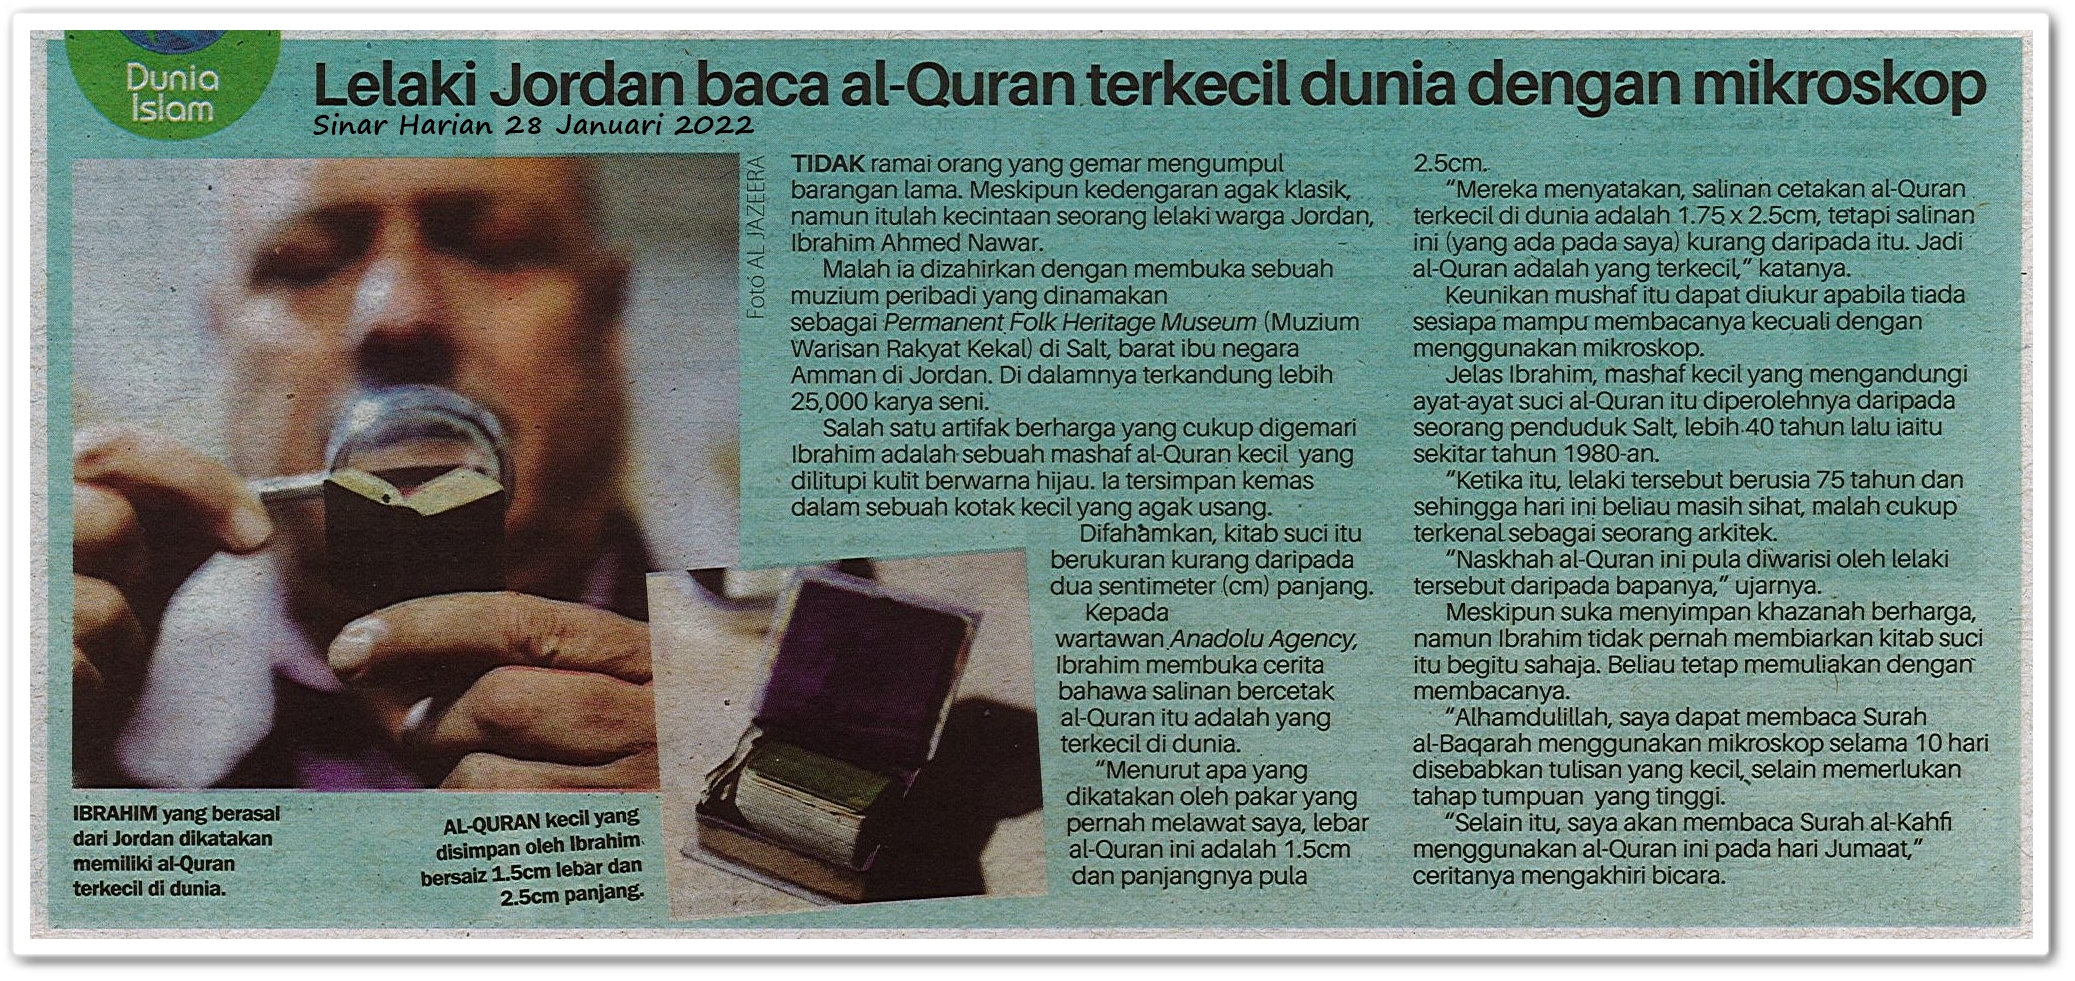 Lelaki Jordan baca Al-Quran terkecil dunia dengan mikroskop - Keratan akhbar Sinar Harian 28 Januari 2022